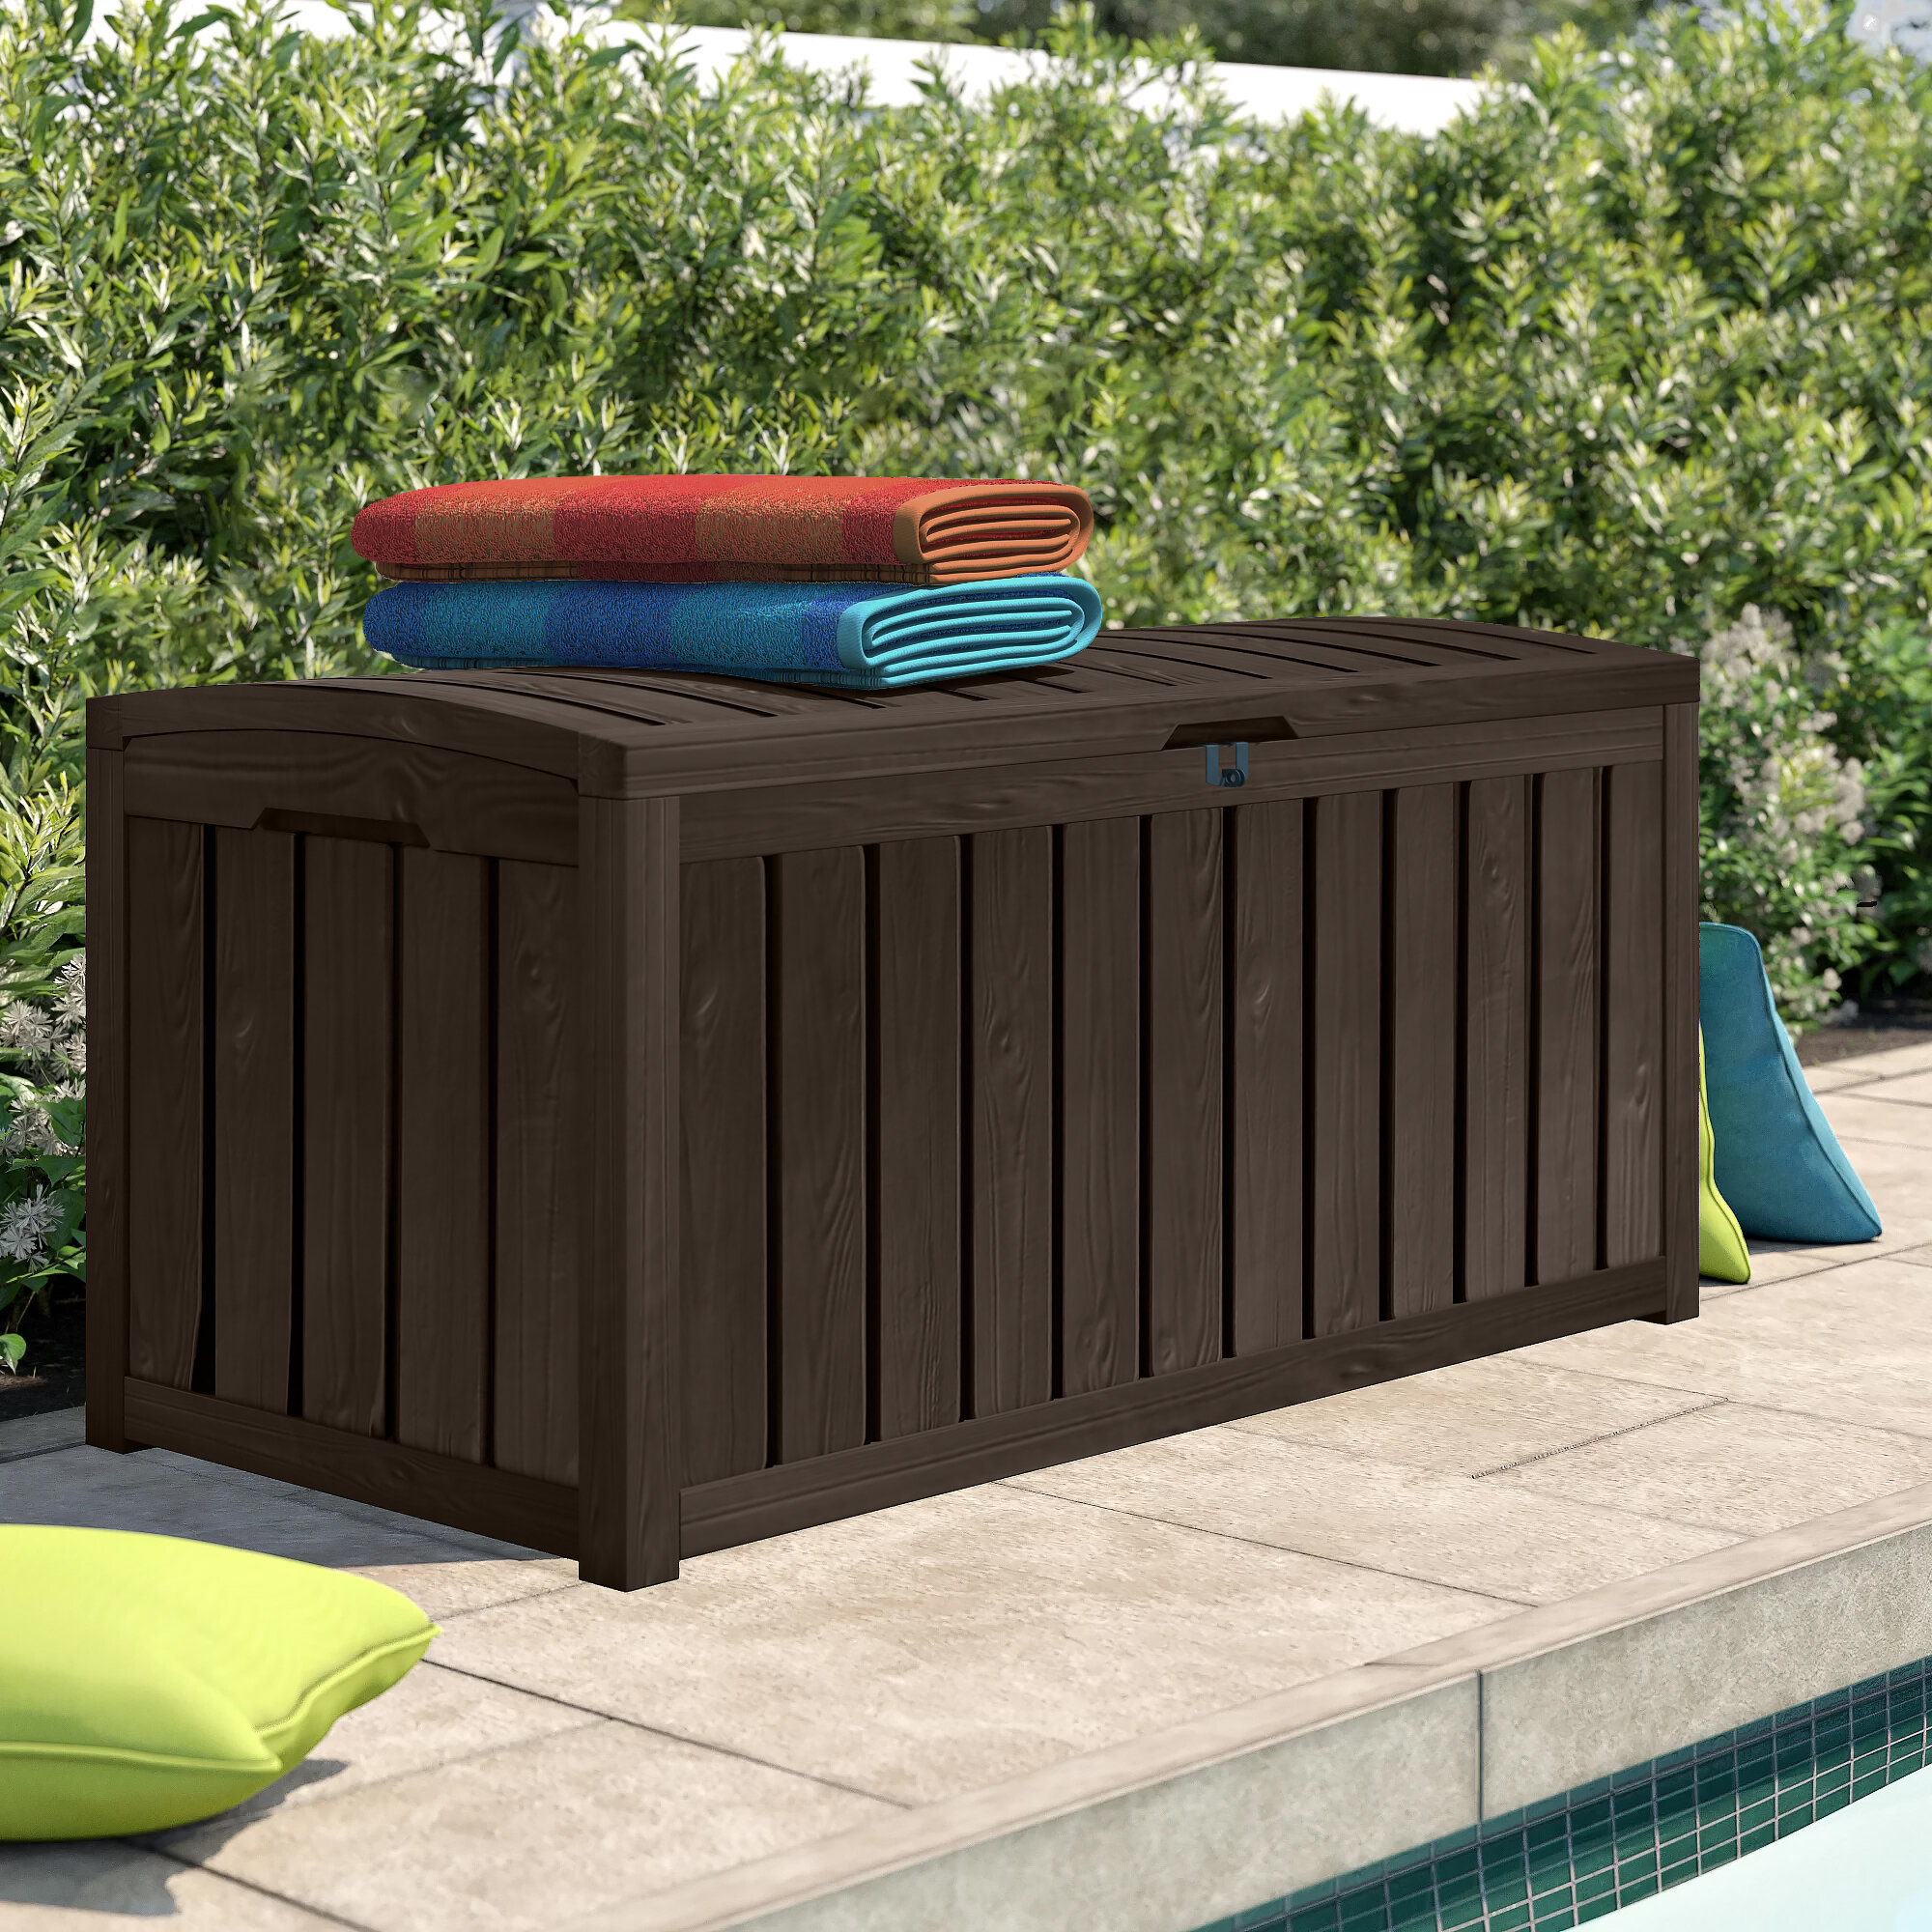 Outdoor Storage Box Rattan Effect Garden Cushion Organizer Patio Deck Cabinet 